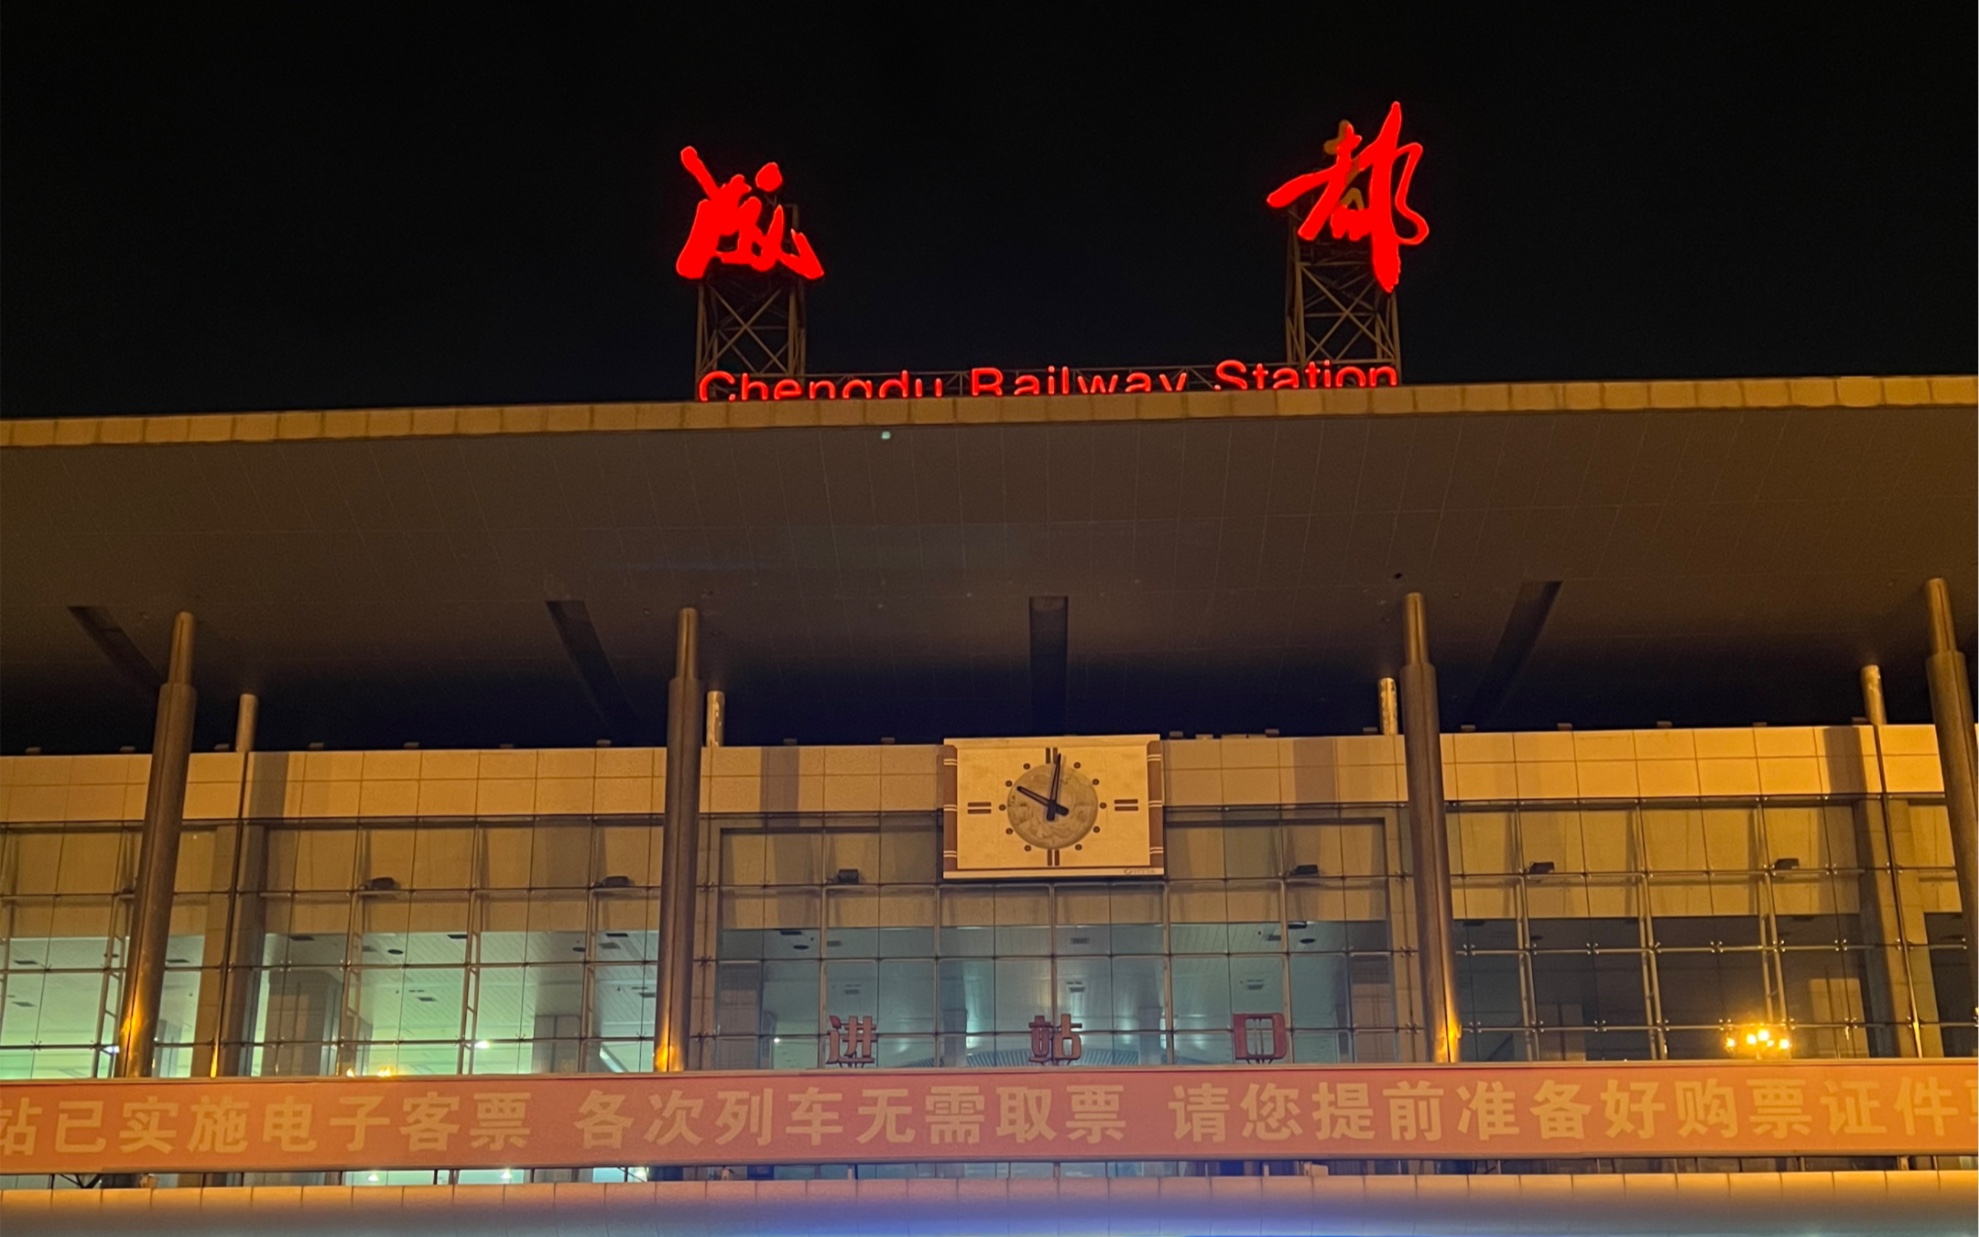 成都火车南站夜景图片